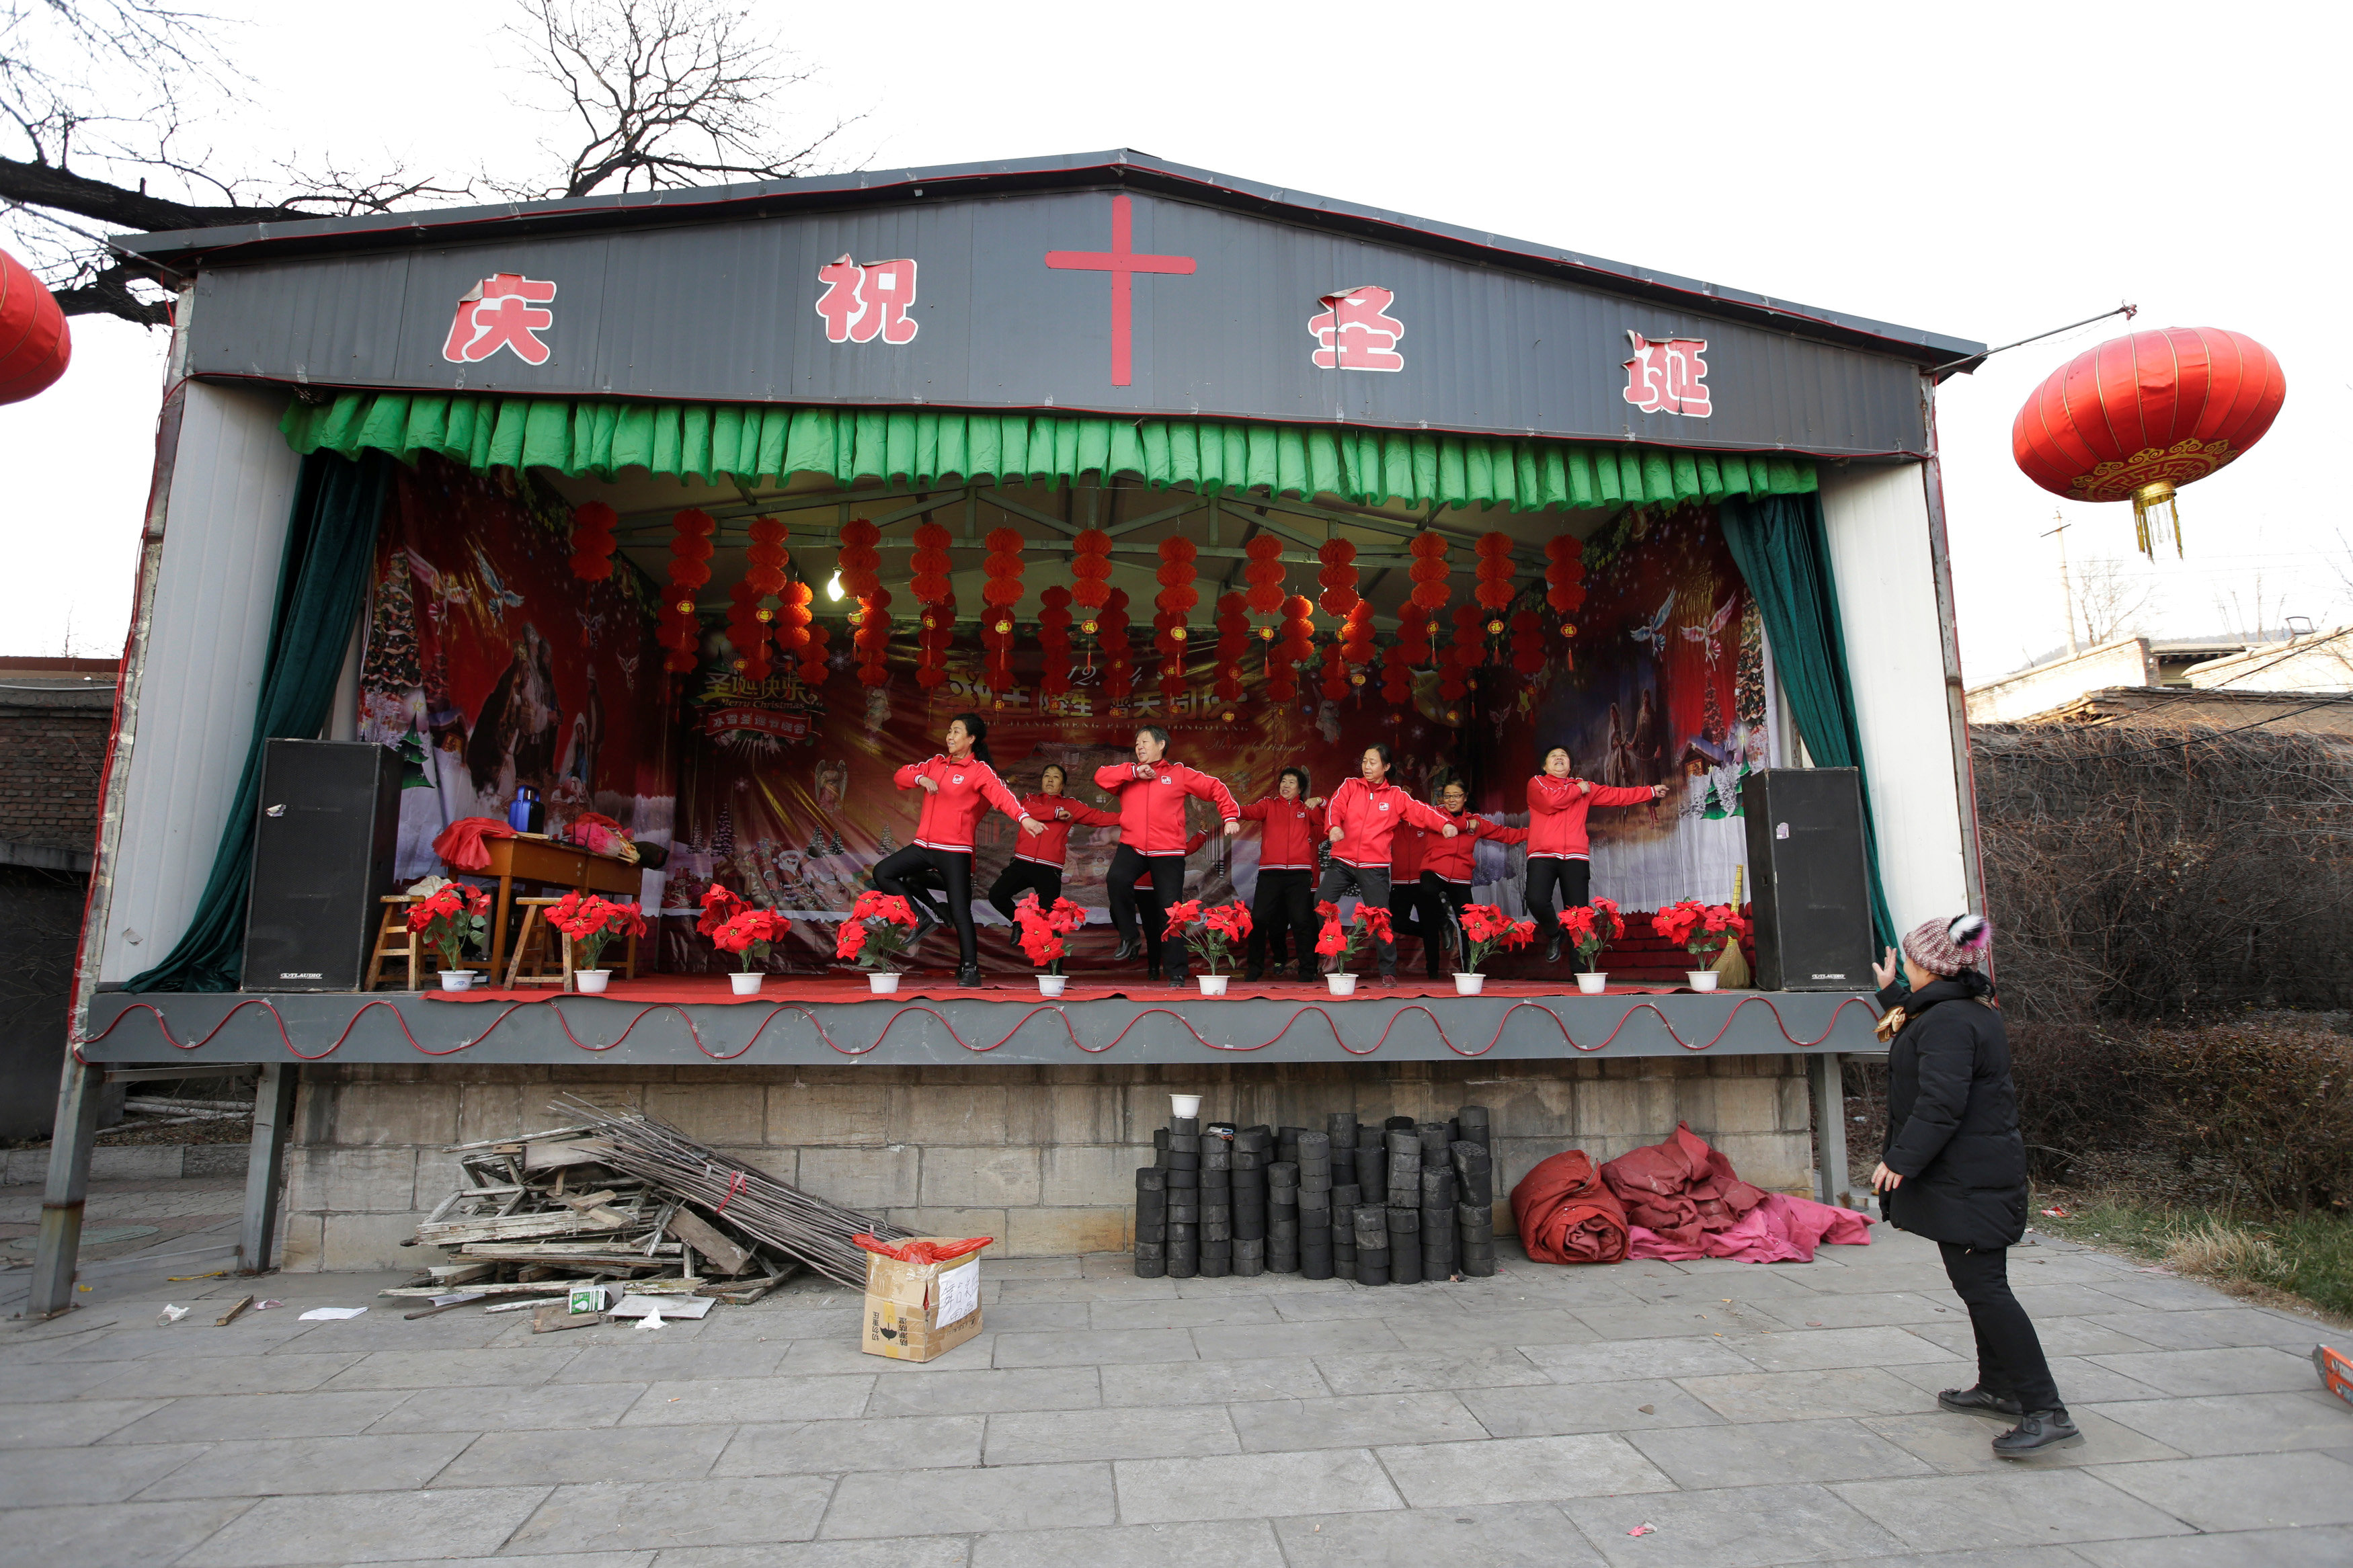 قرويون صينيون يرقصون خارج الكنيسة الكاثوليكية احتفالا بعيد الميلاد فى تاى يوان (2)